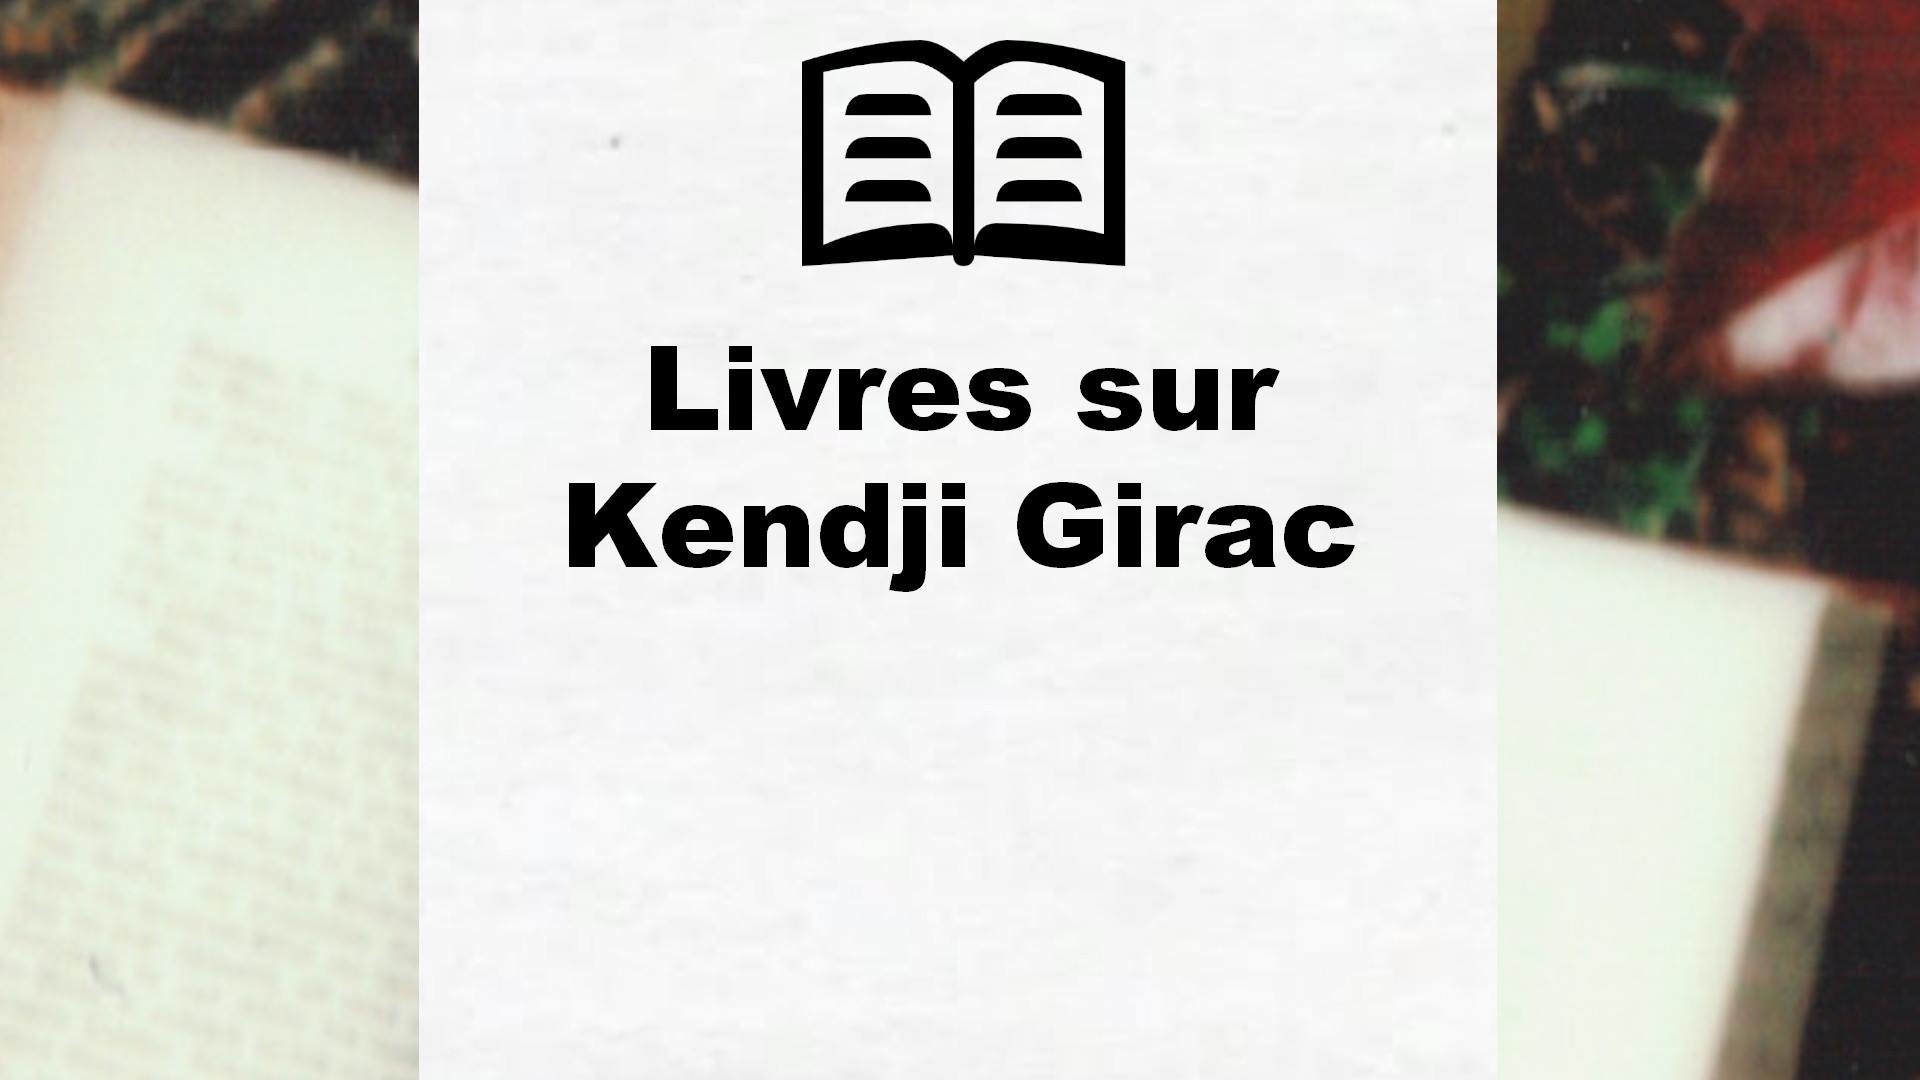 Livres sur Kendji Girac